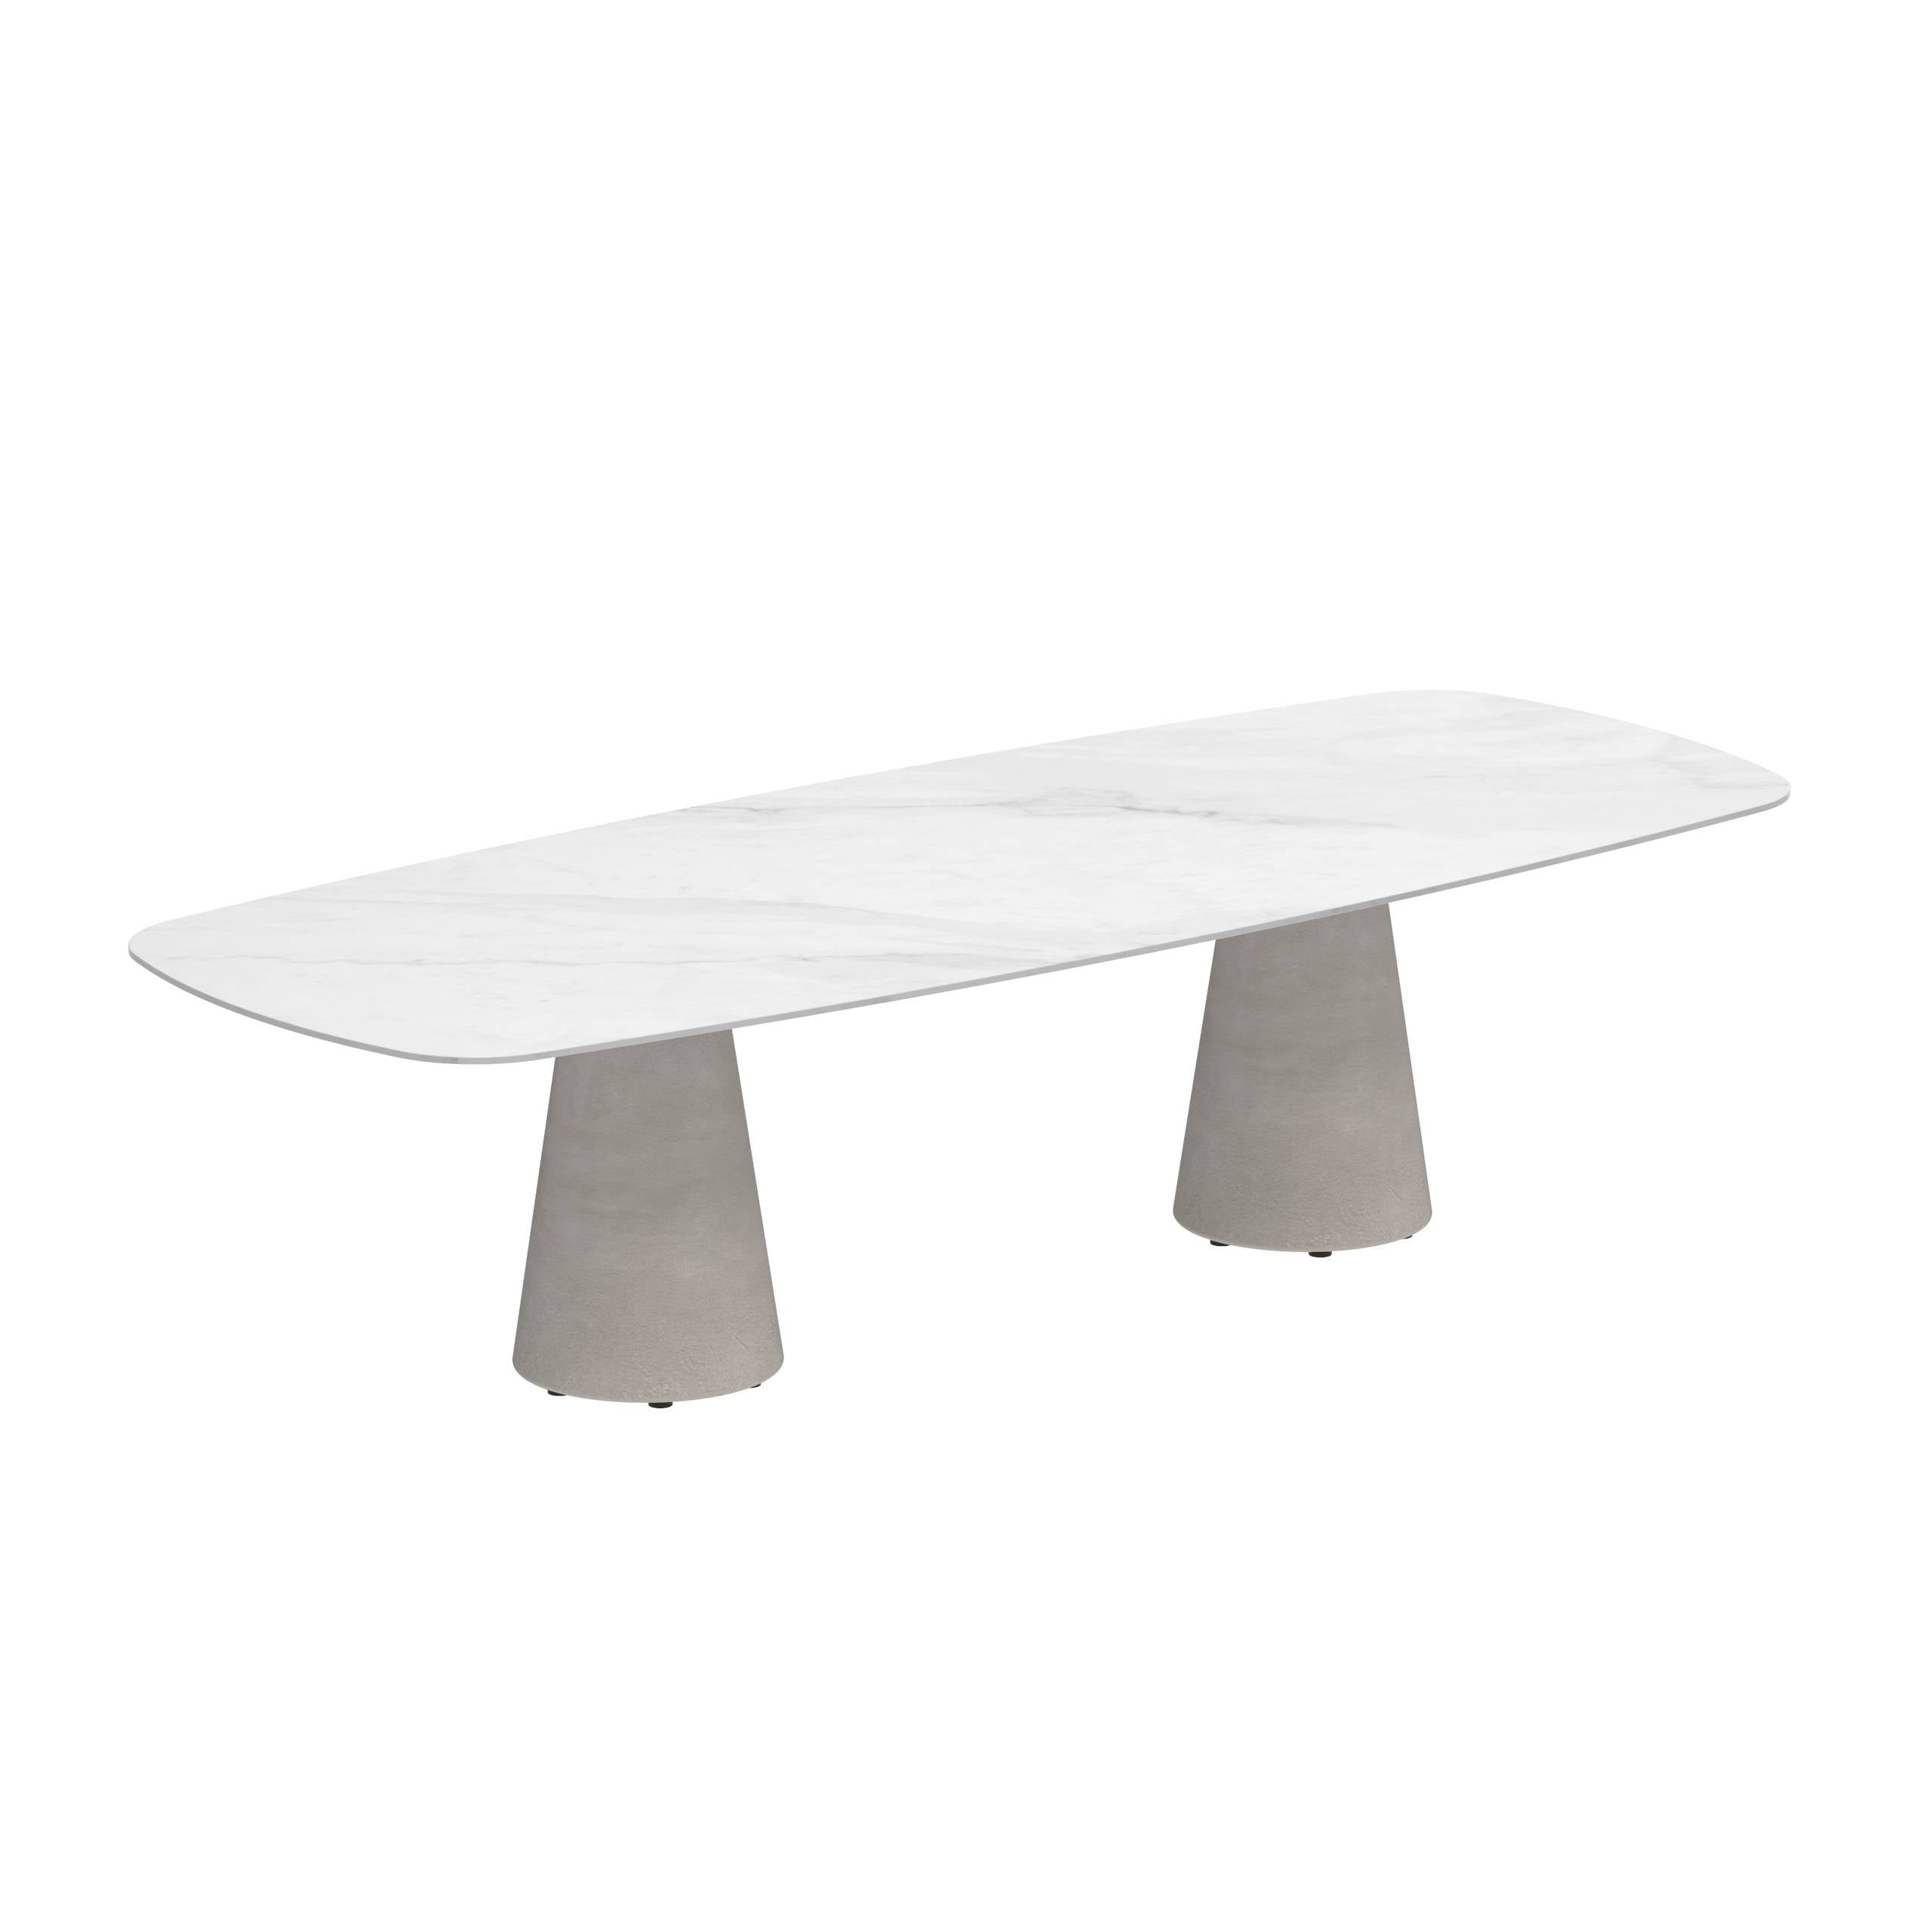 Conix Table 300x120 Cm Legs Concrete Cement Grey - Table Top Ceramic Bianco Statuario